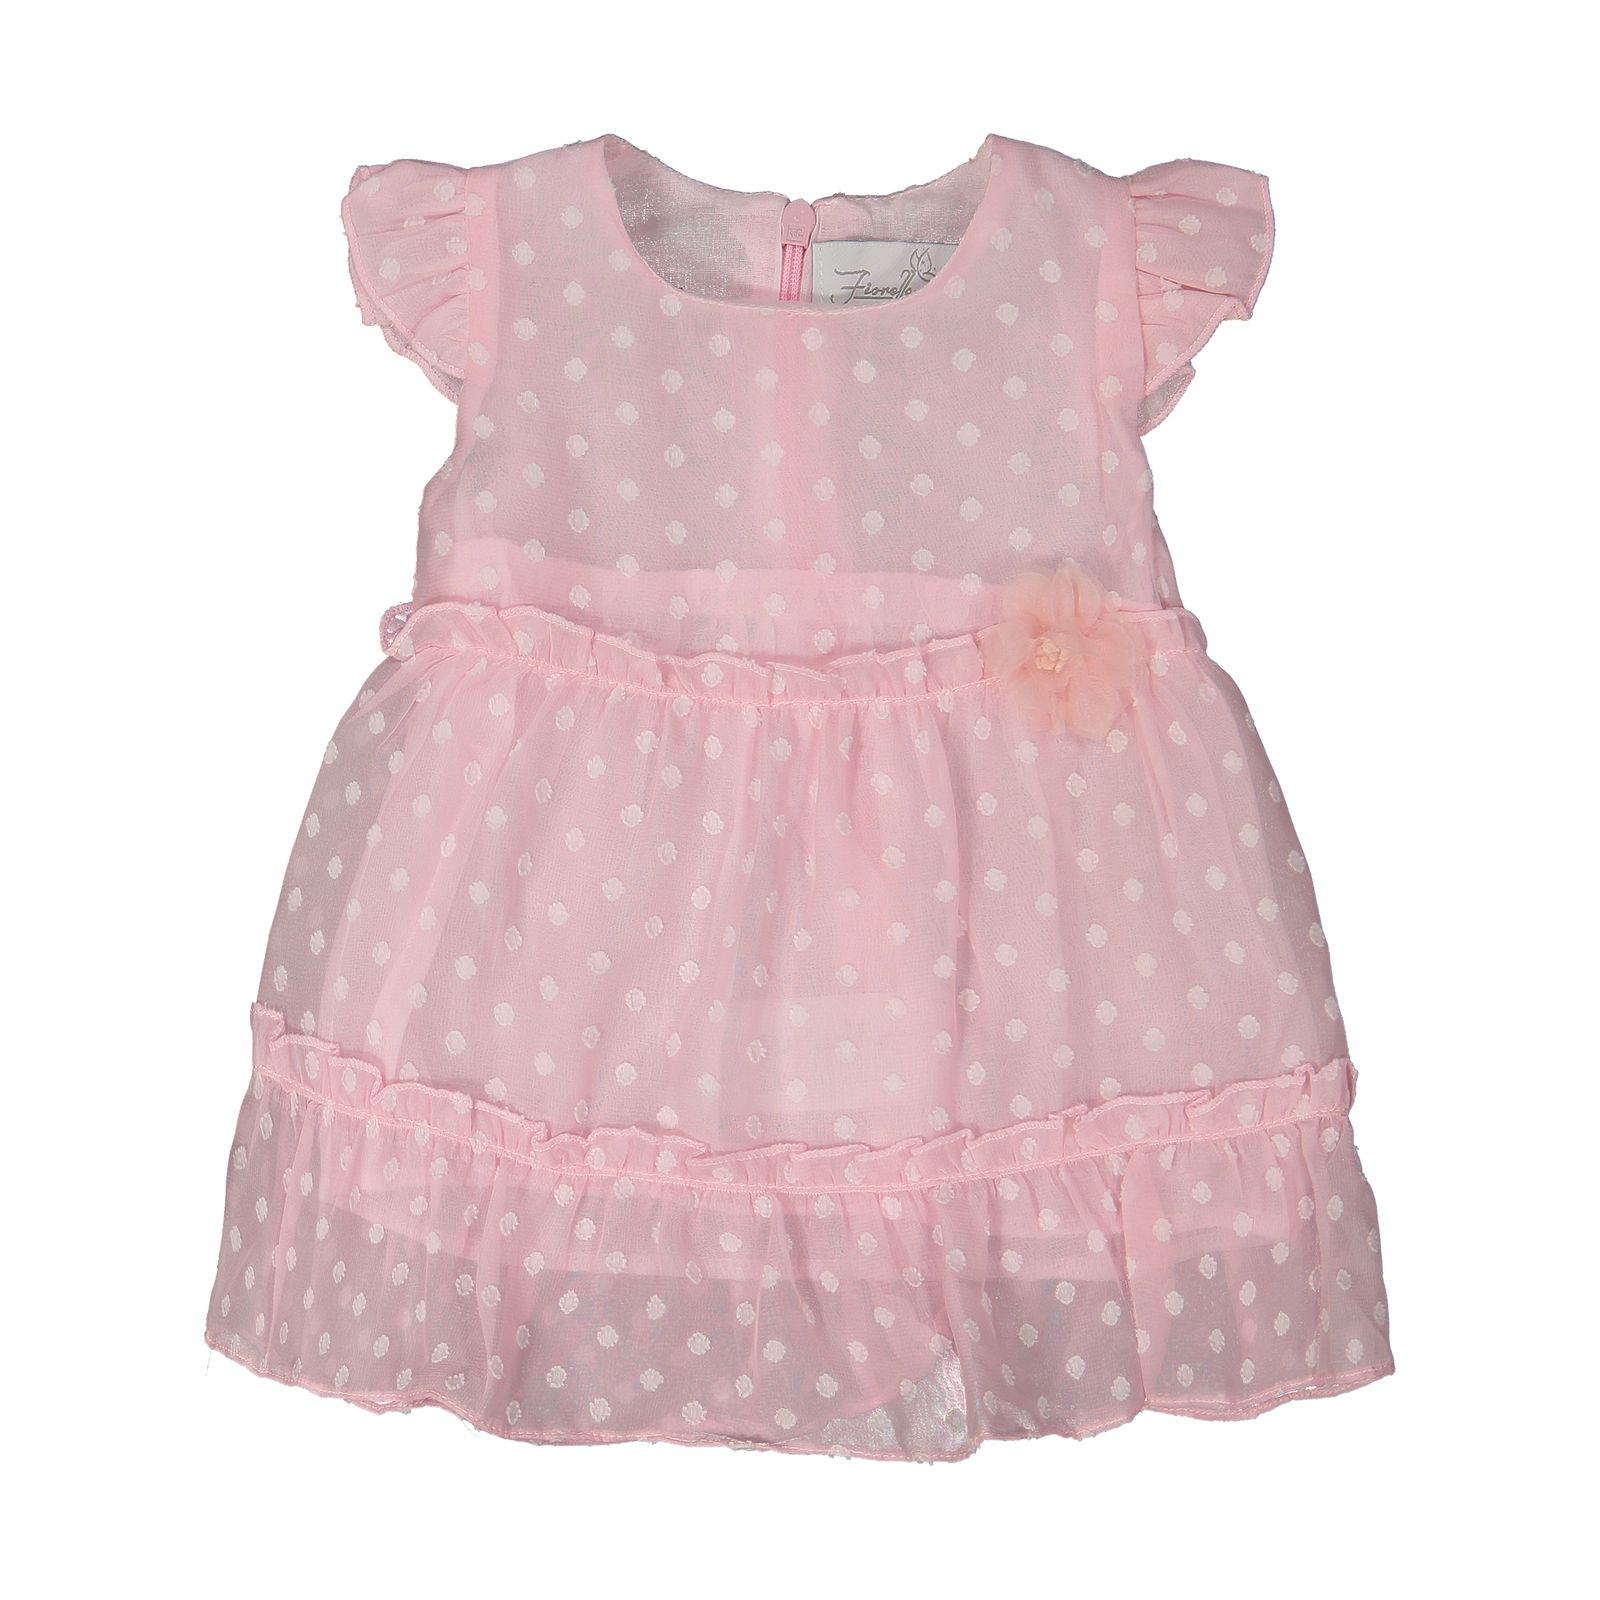 پیراهن نوزادی دخترانه فیورلا مدل 2091137-84 -  - 1